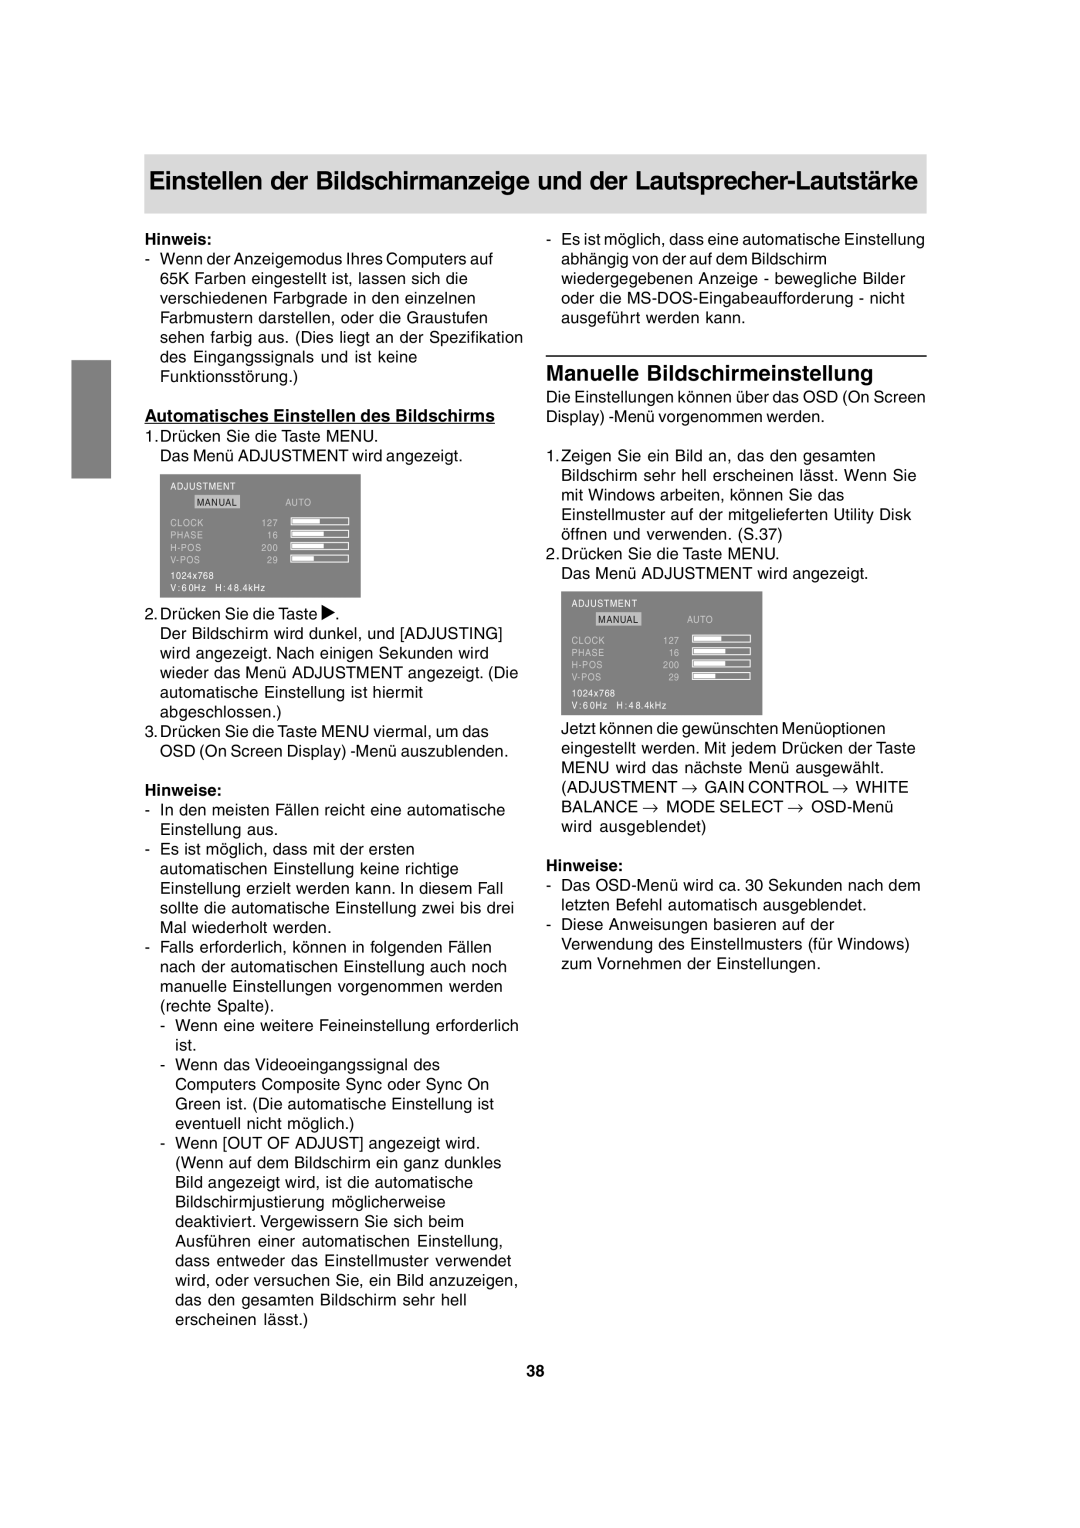 Sharp LL-T15A4 operation manual Manuelle Bildschirmeinstellung, Automatisches Einstellen des Bildschirms, Hinweise 